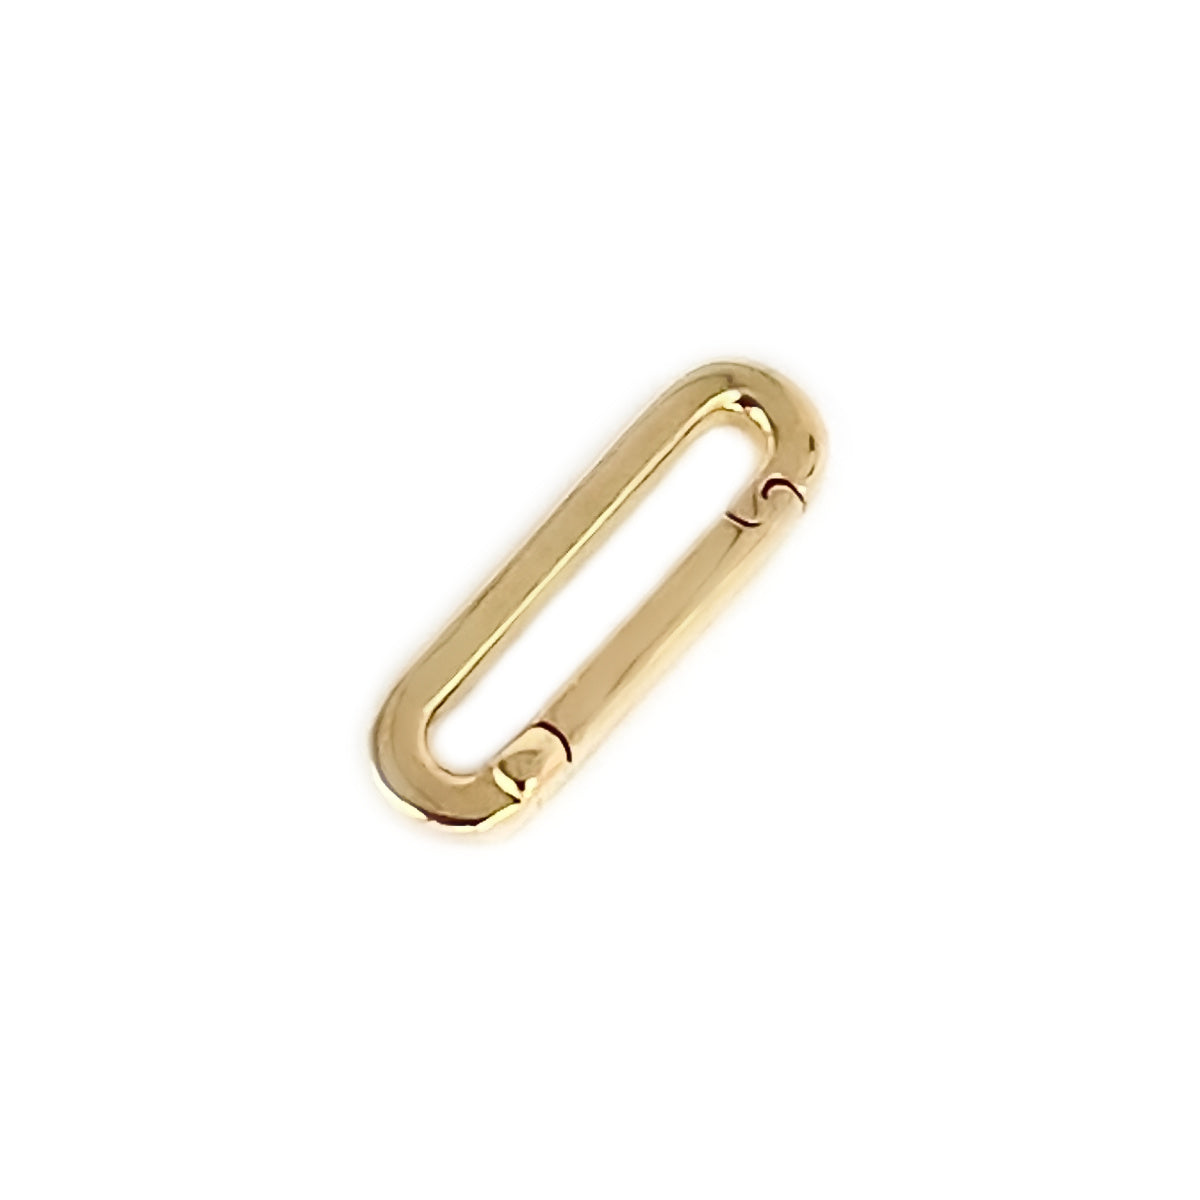 14k Gold Charm Holder for Medical Alert Bracelet, Necklace, Pendant | Multiple Charm Clip Connector